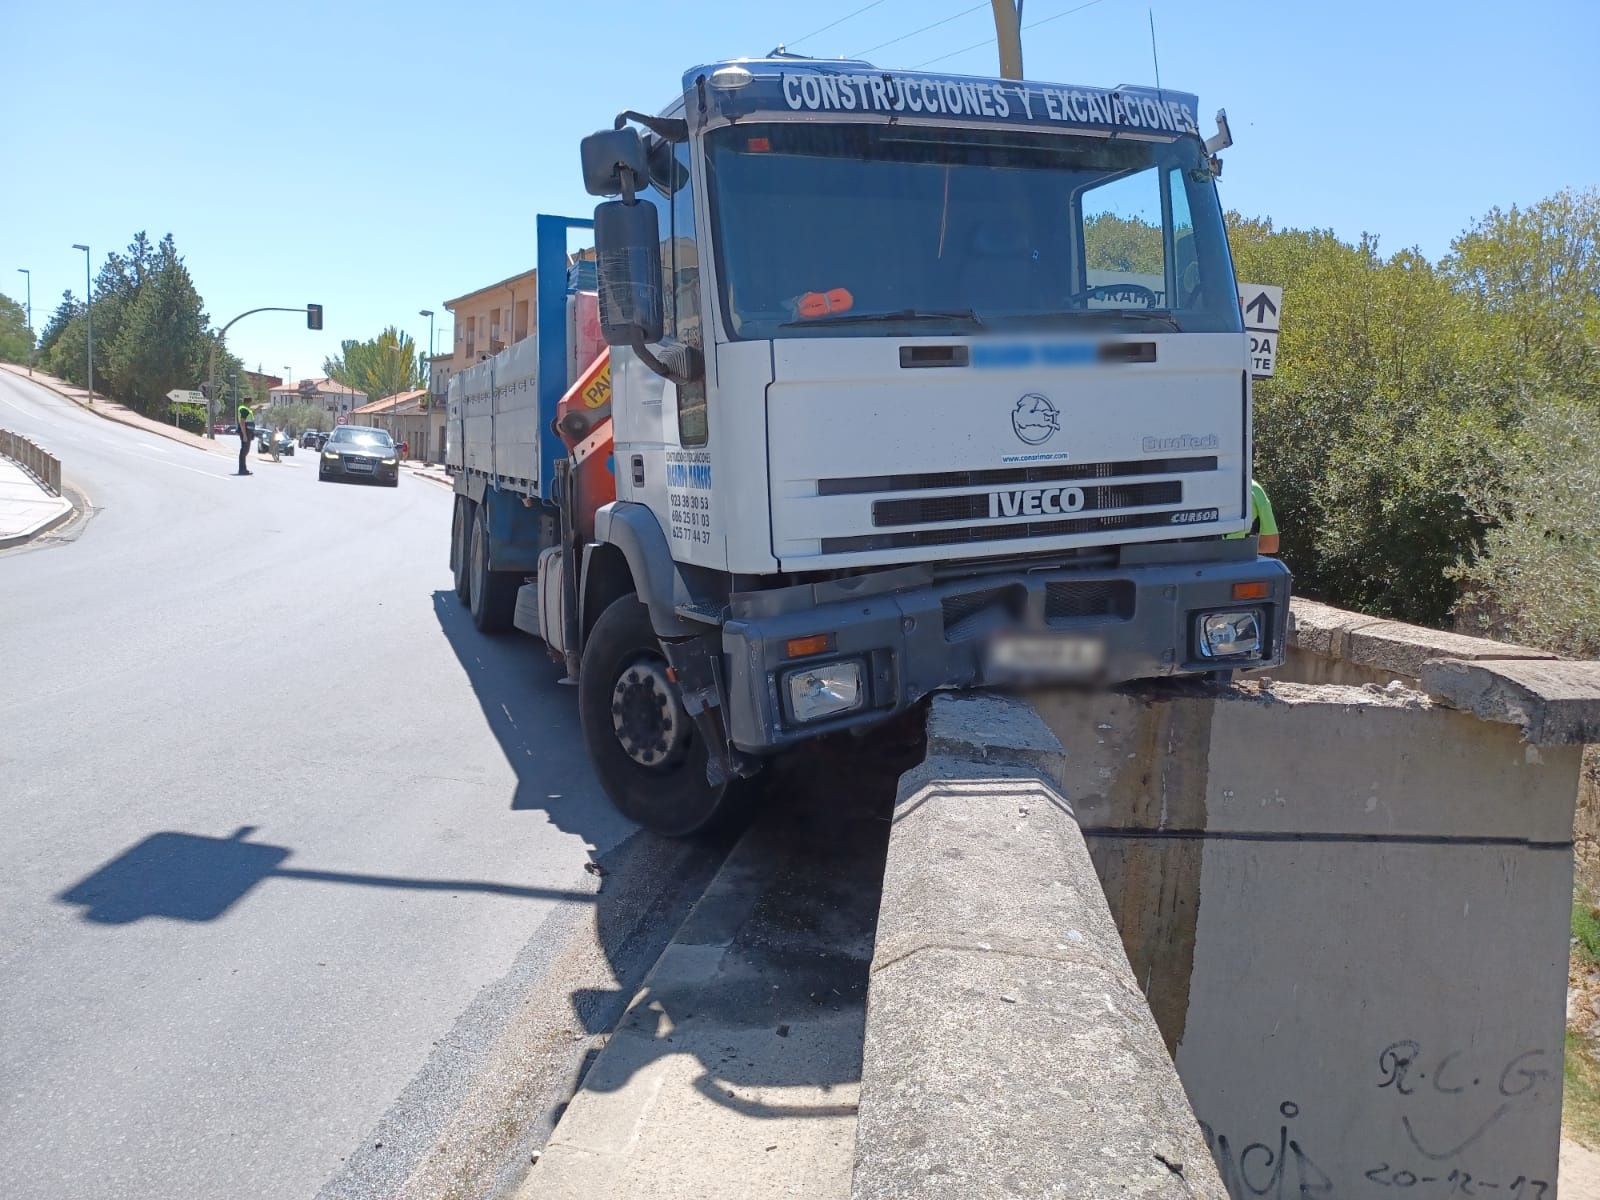 Estado del camión tras chocar con el pequeño muro / FOTO SALAMANCA24HORAS.COM